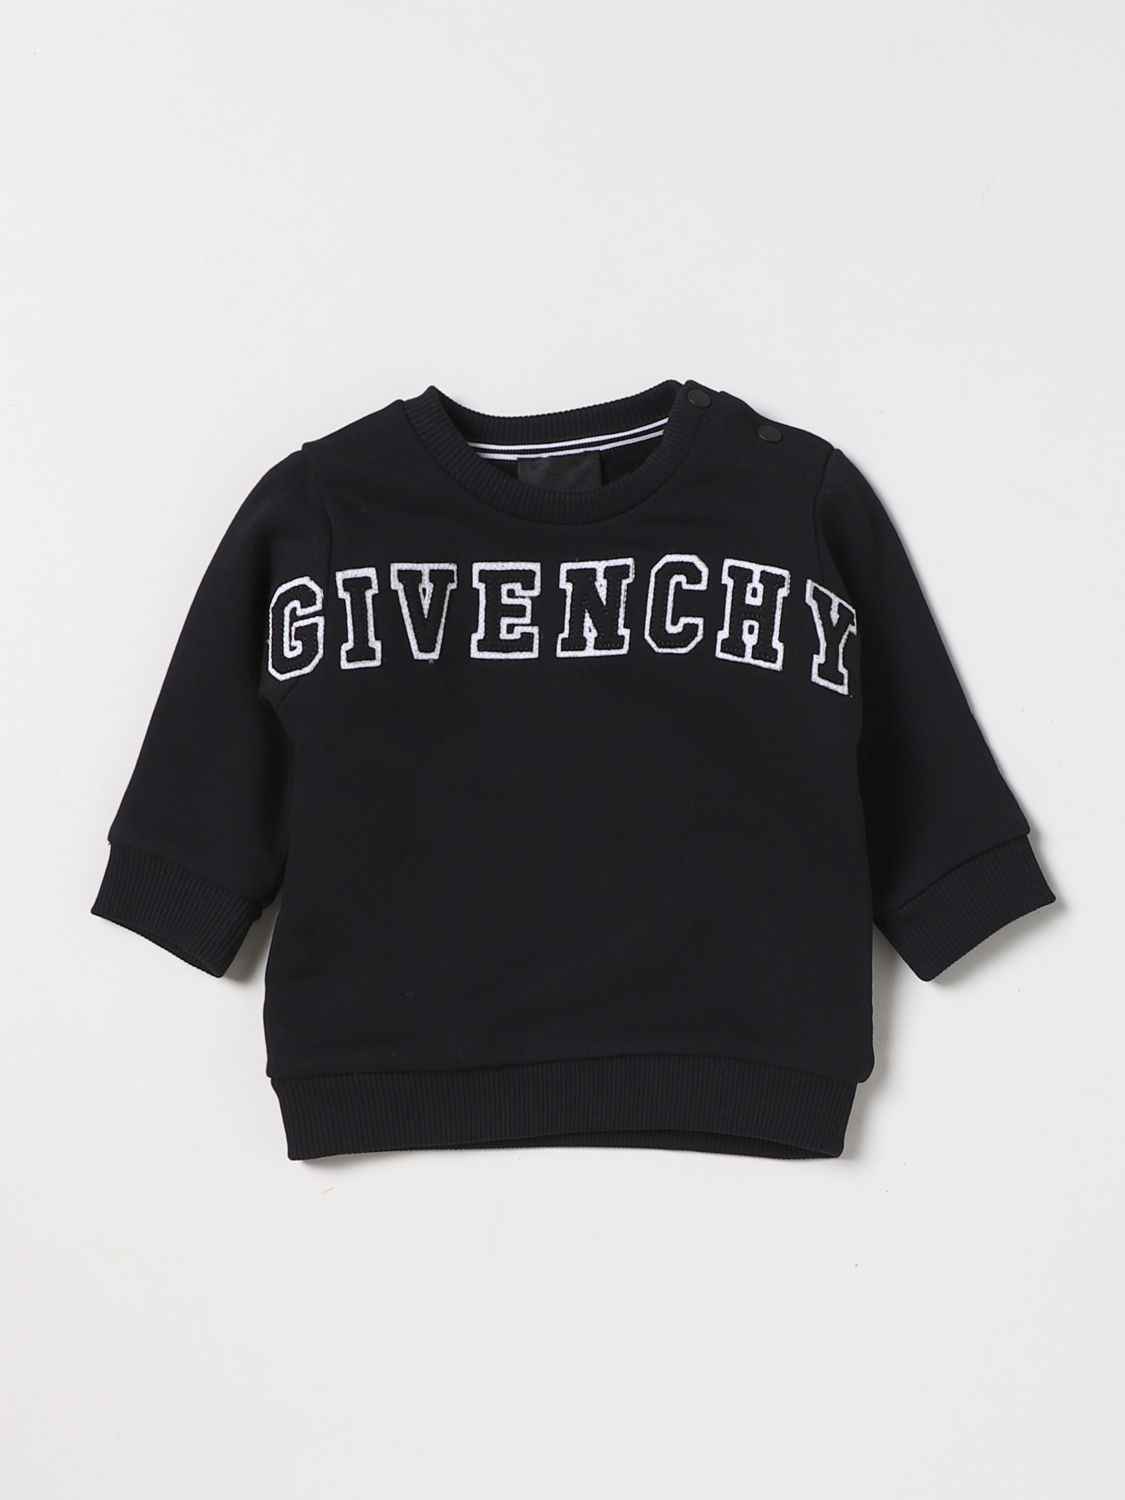 Свитер Givenchy: Свитер Givenchy малыш черный 1